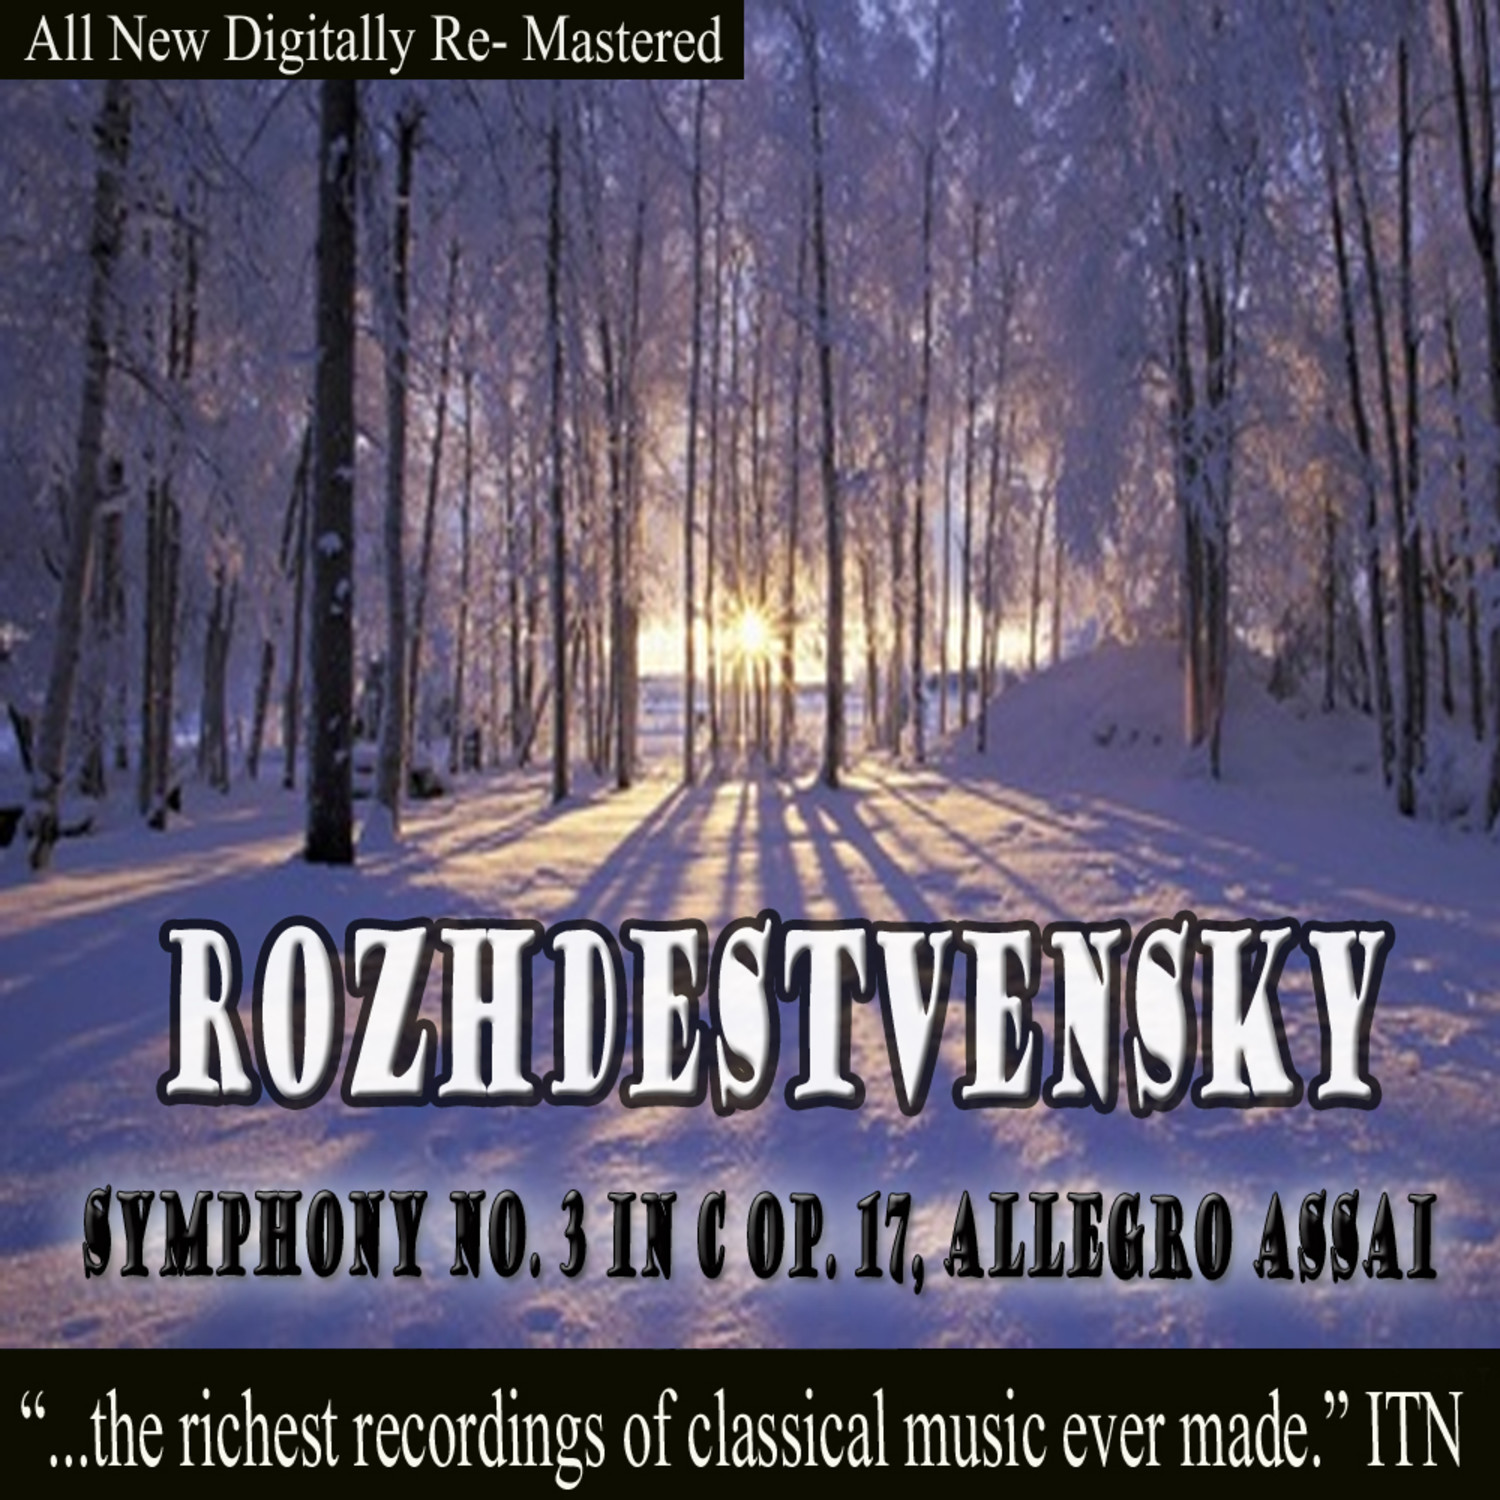 Sinfonietta for String Orchestra, Allegro grazioso